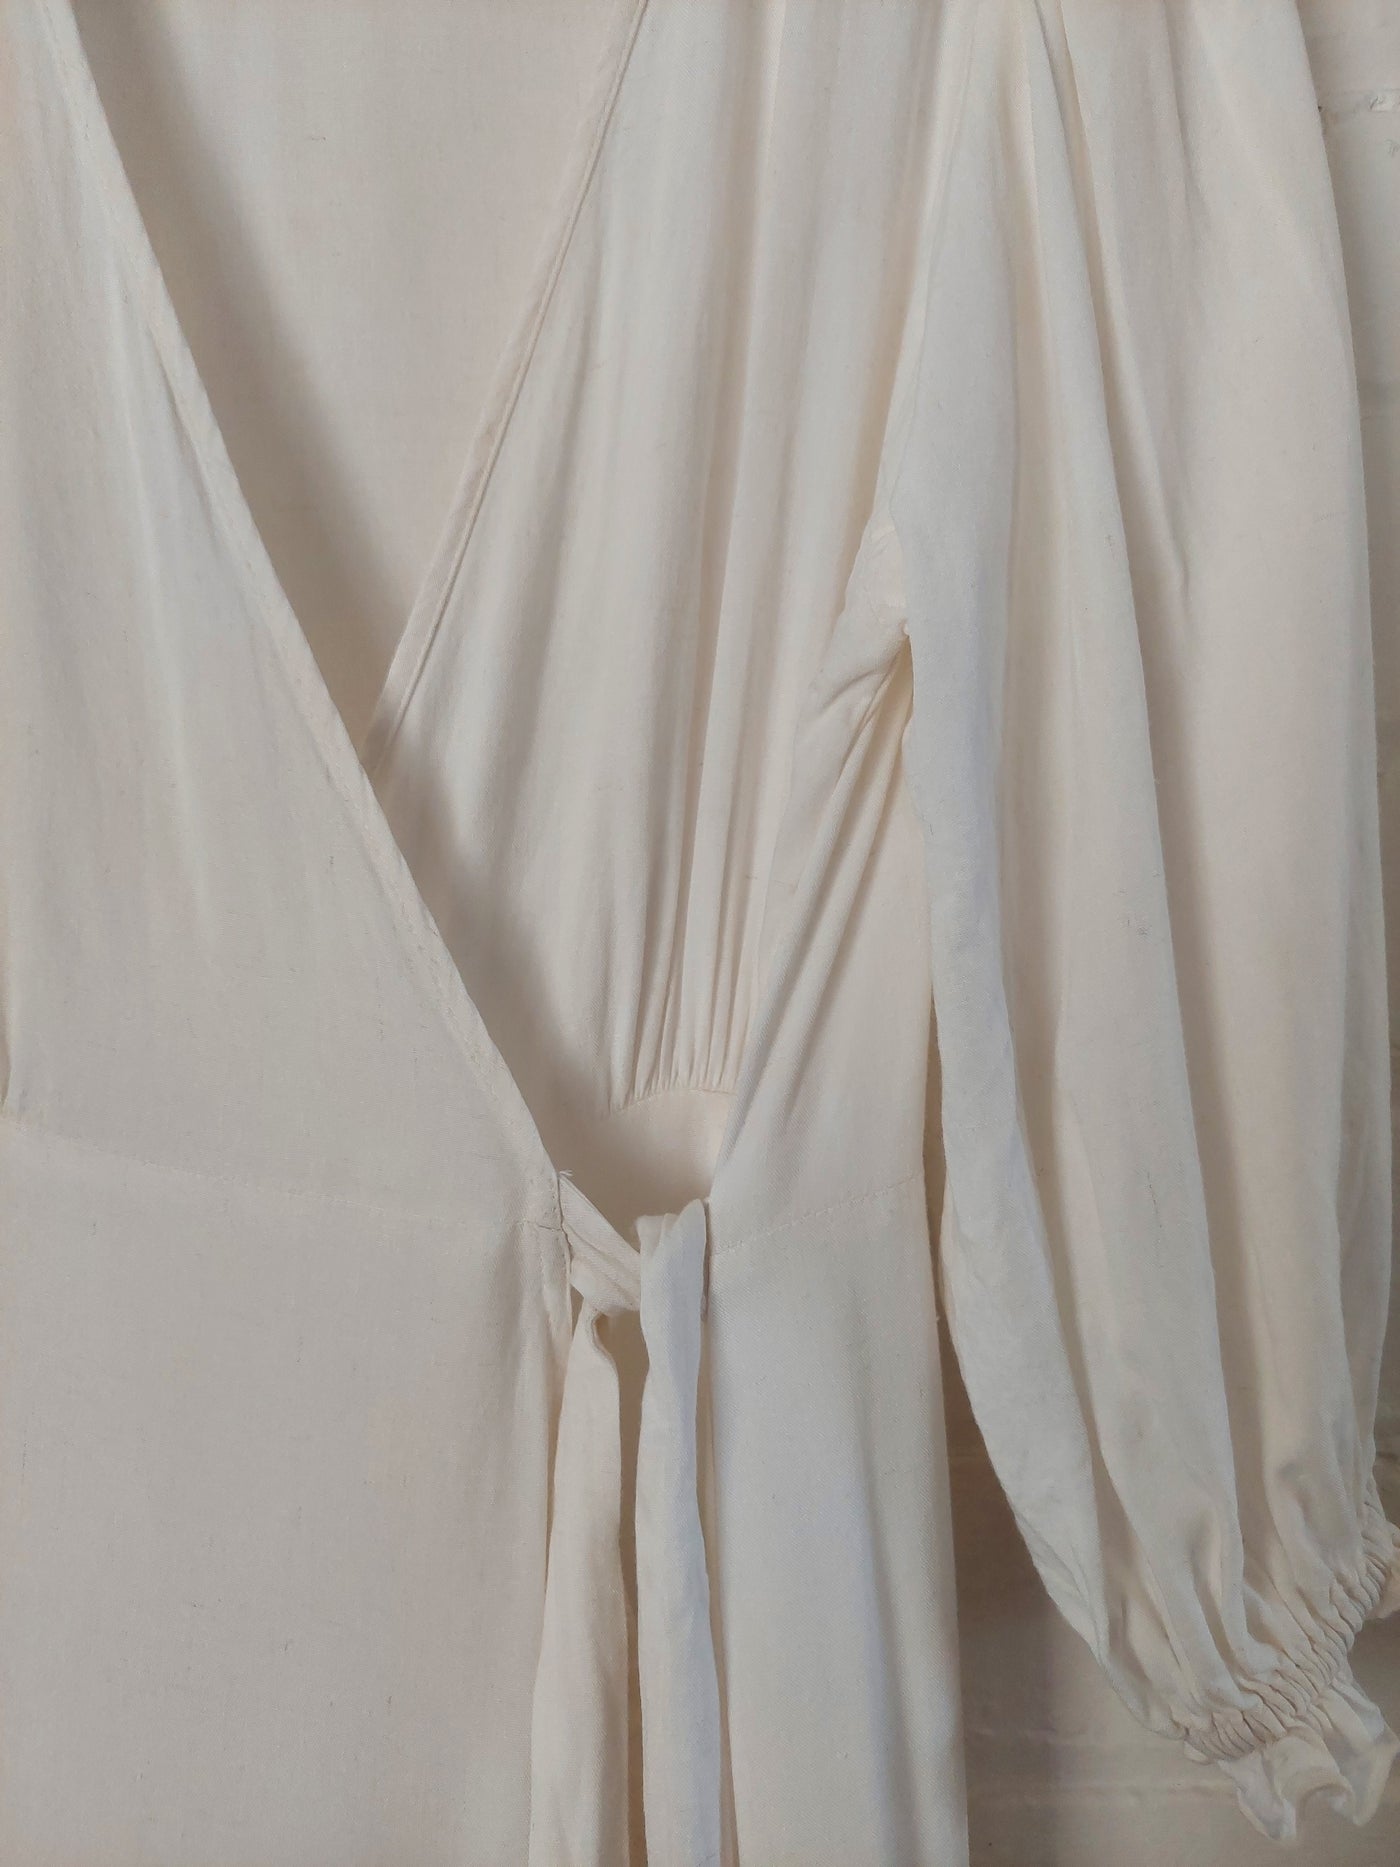 Bird & Kite Jude Wrap Dress in Natural Linen blend, Size M (12)